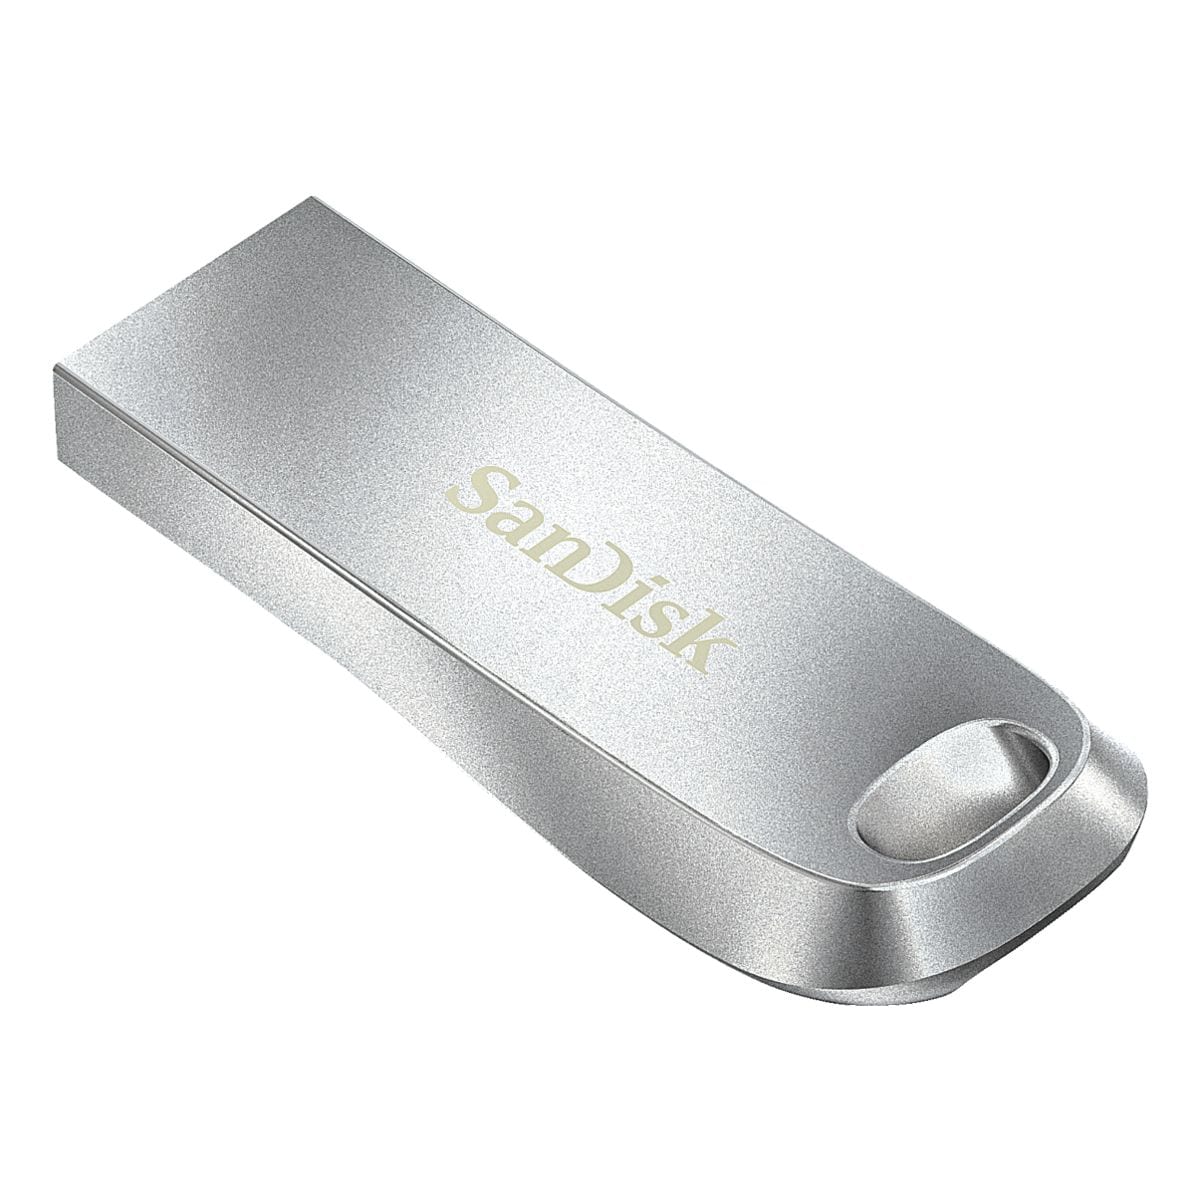 USB-Stick 256 GB SanDisk Ultra Luxe USB 3.1 mit Passwortschutz